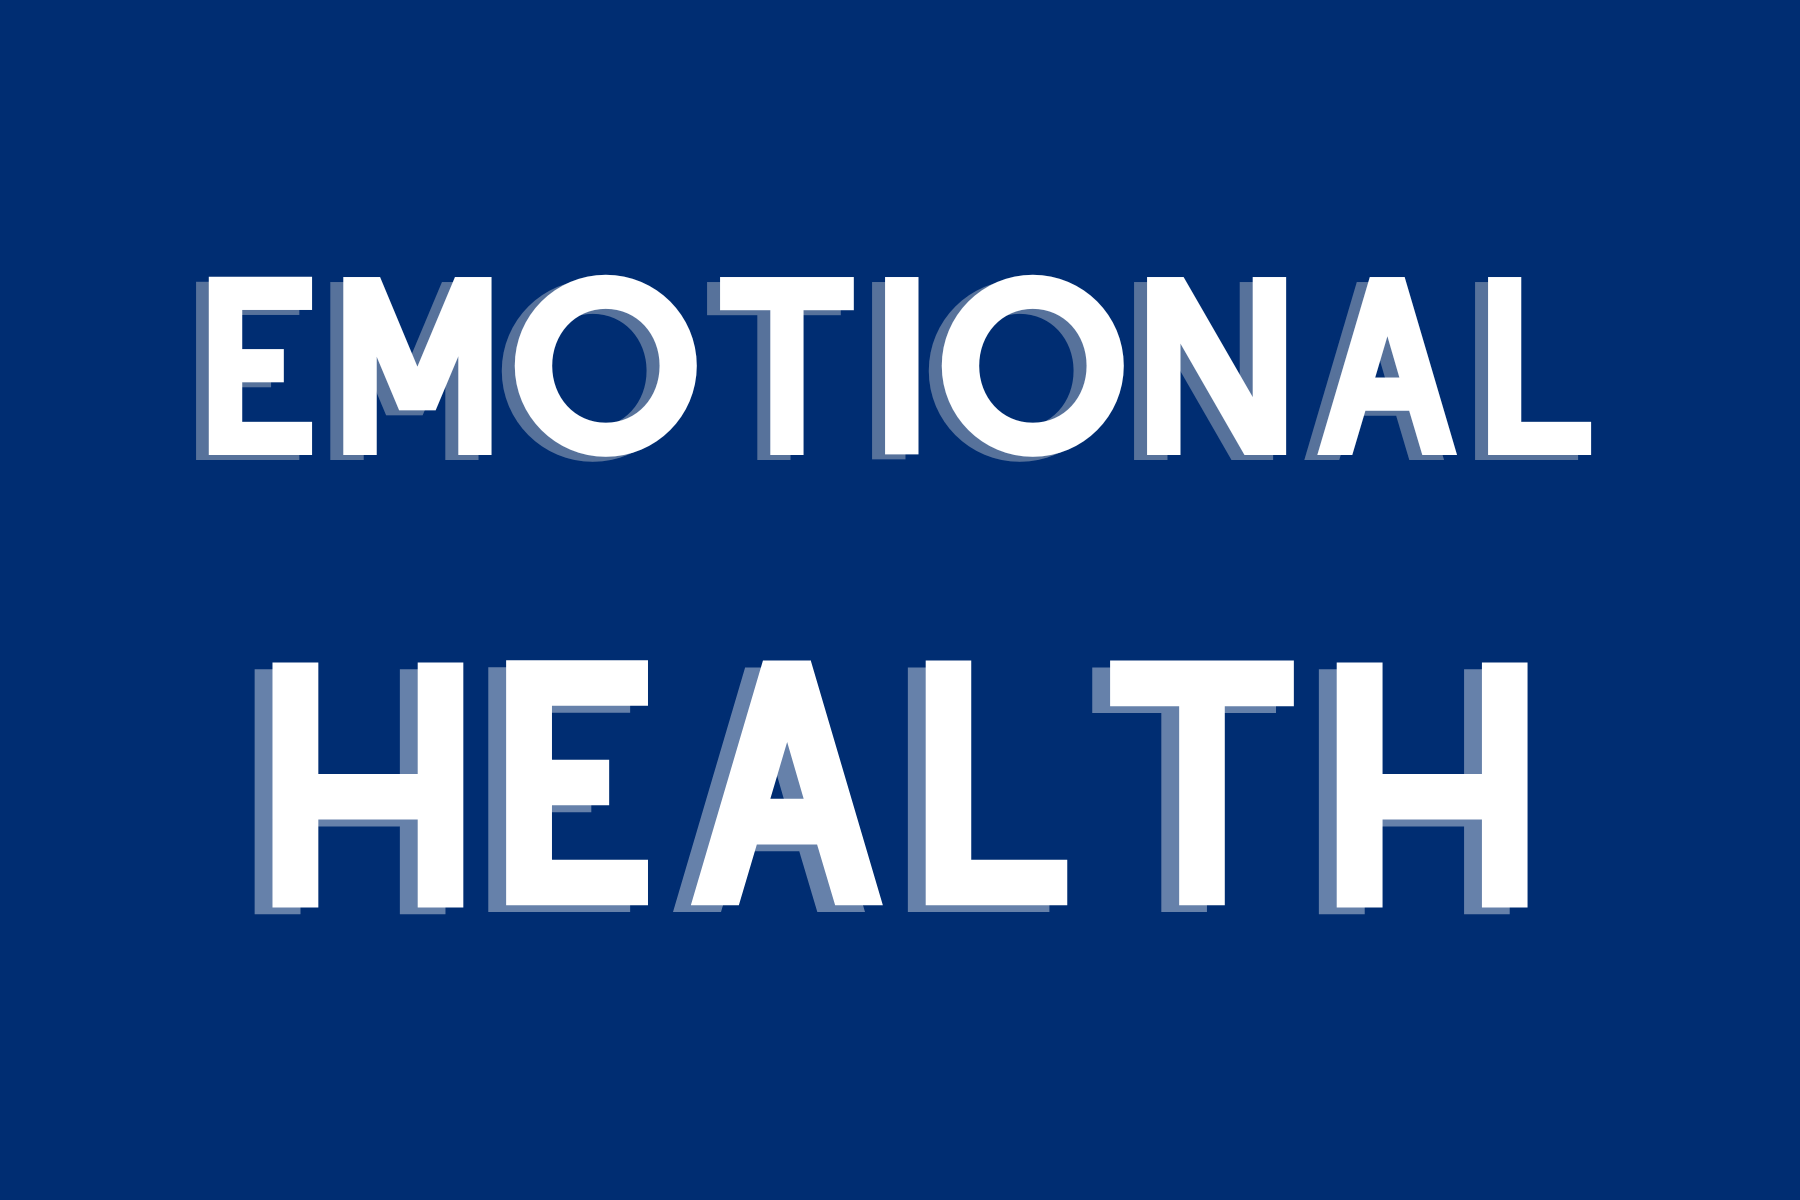 emotional health